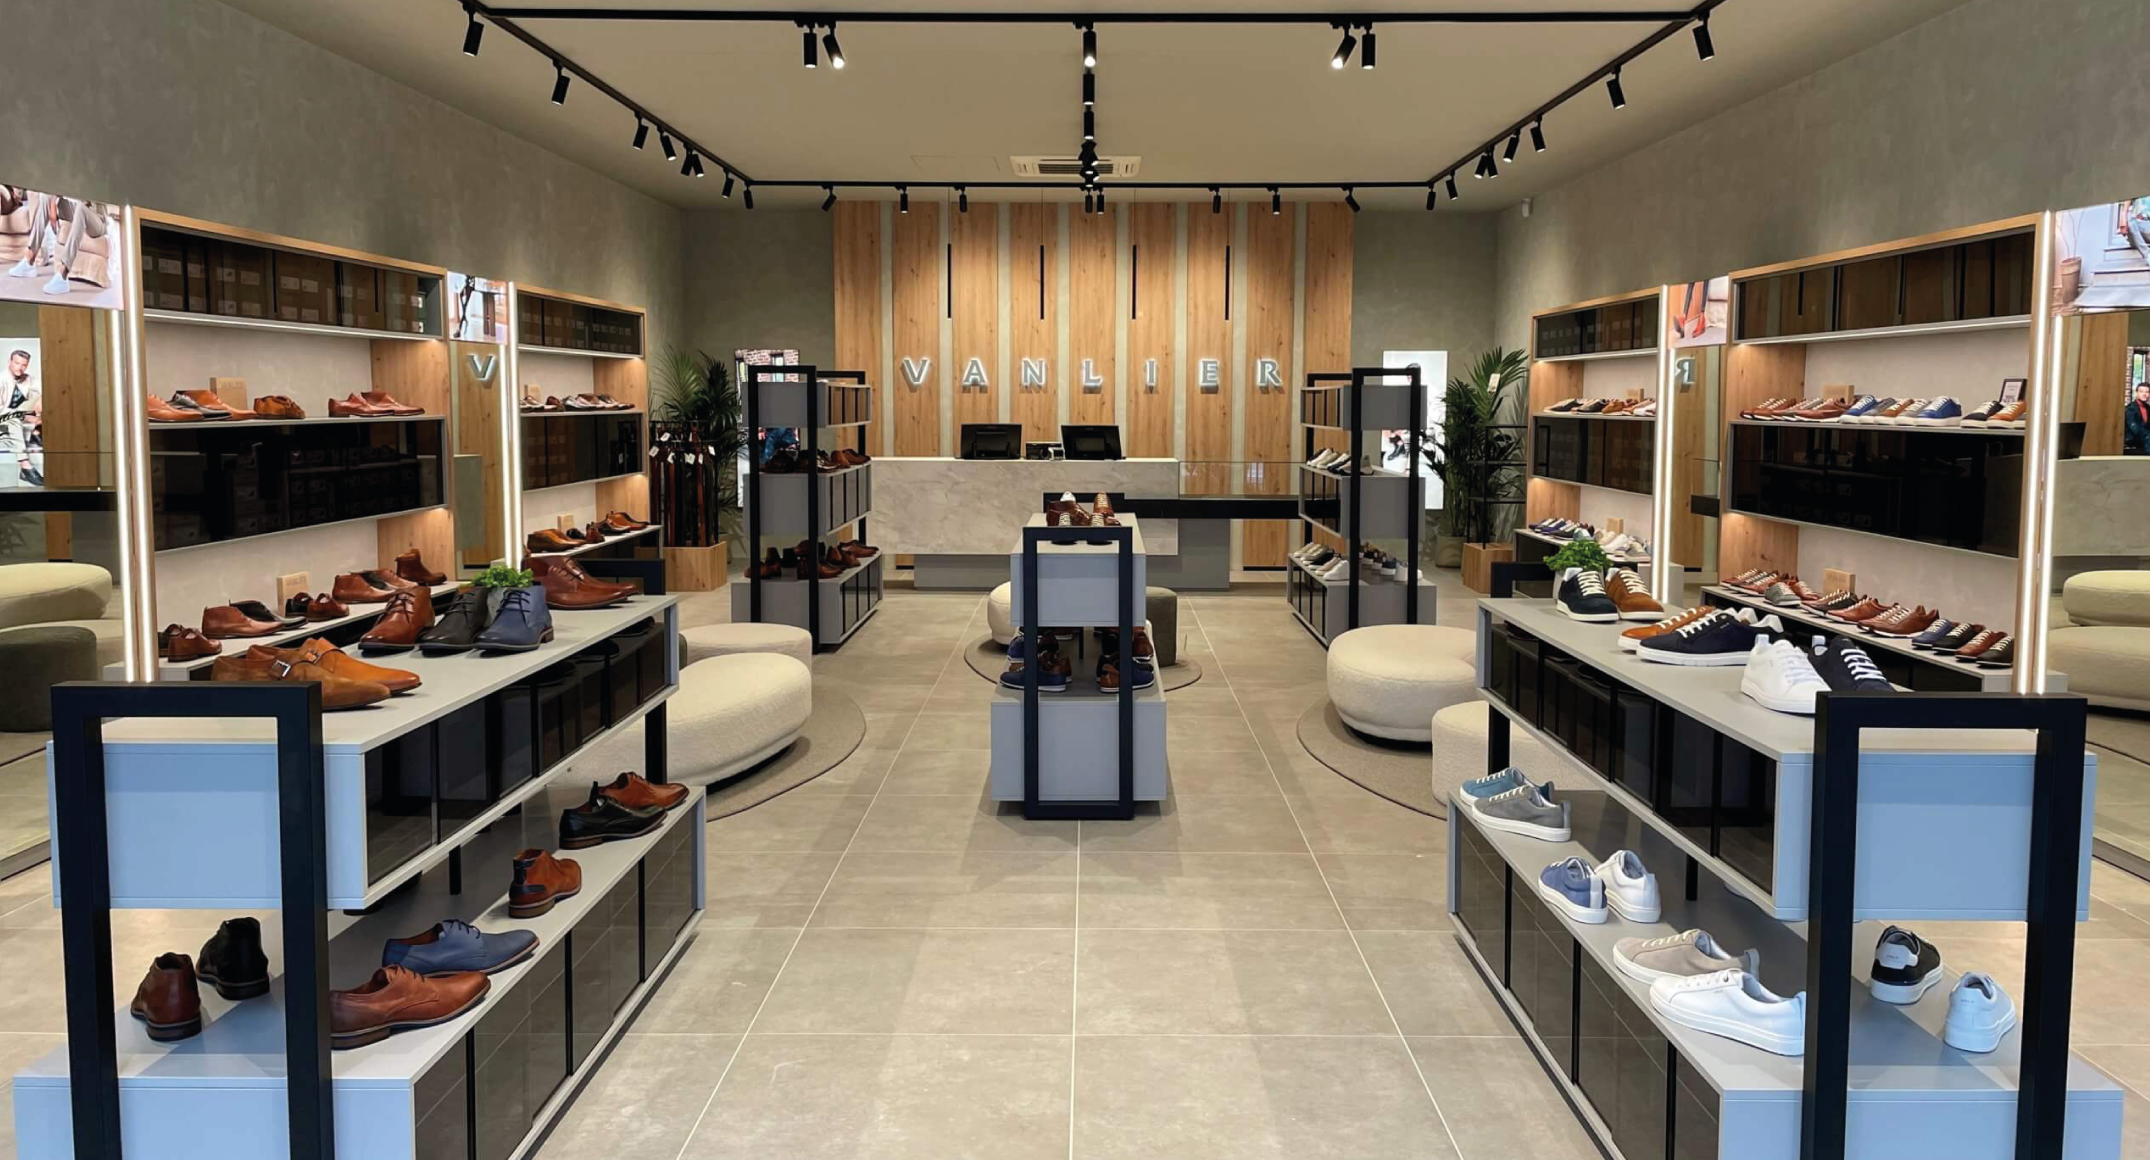 Binnenkijken: Van Lier opent achtste store in Roosendaal